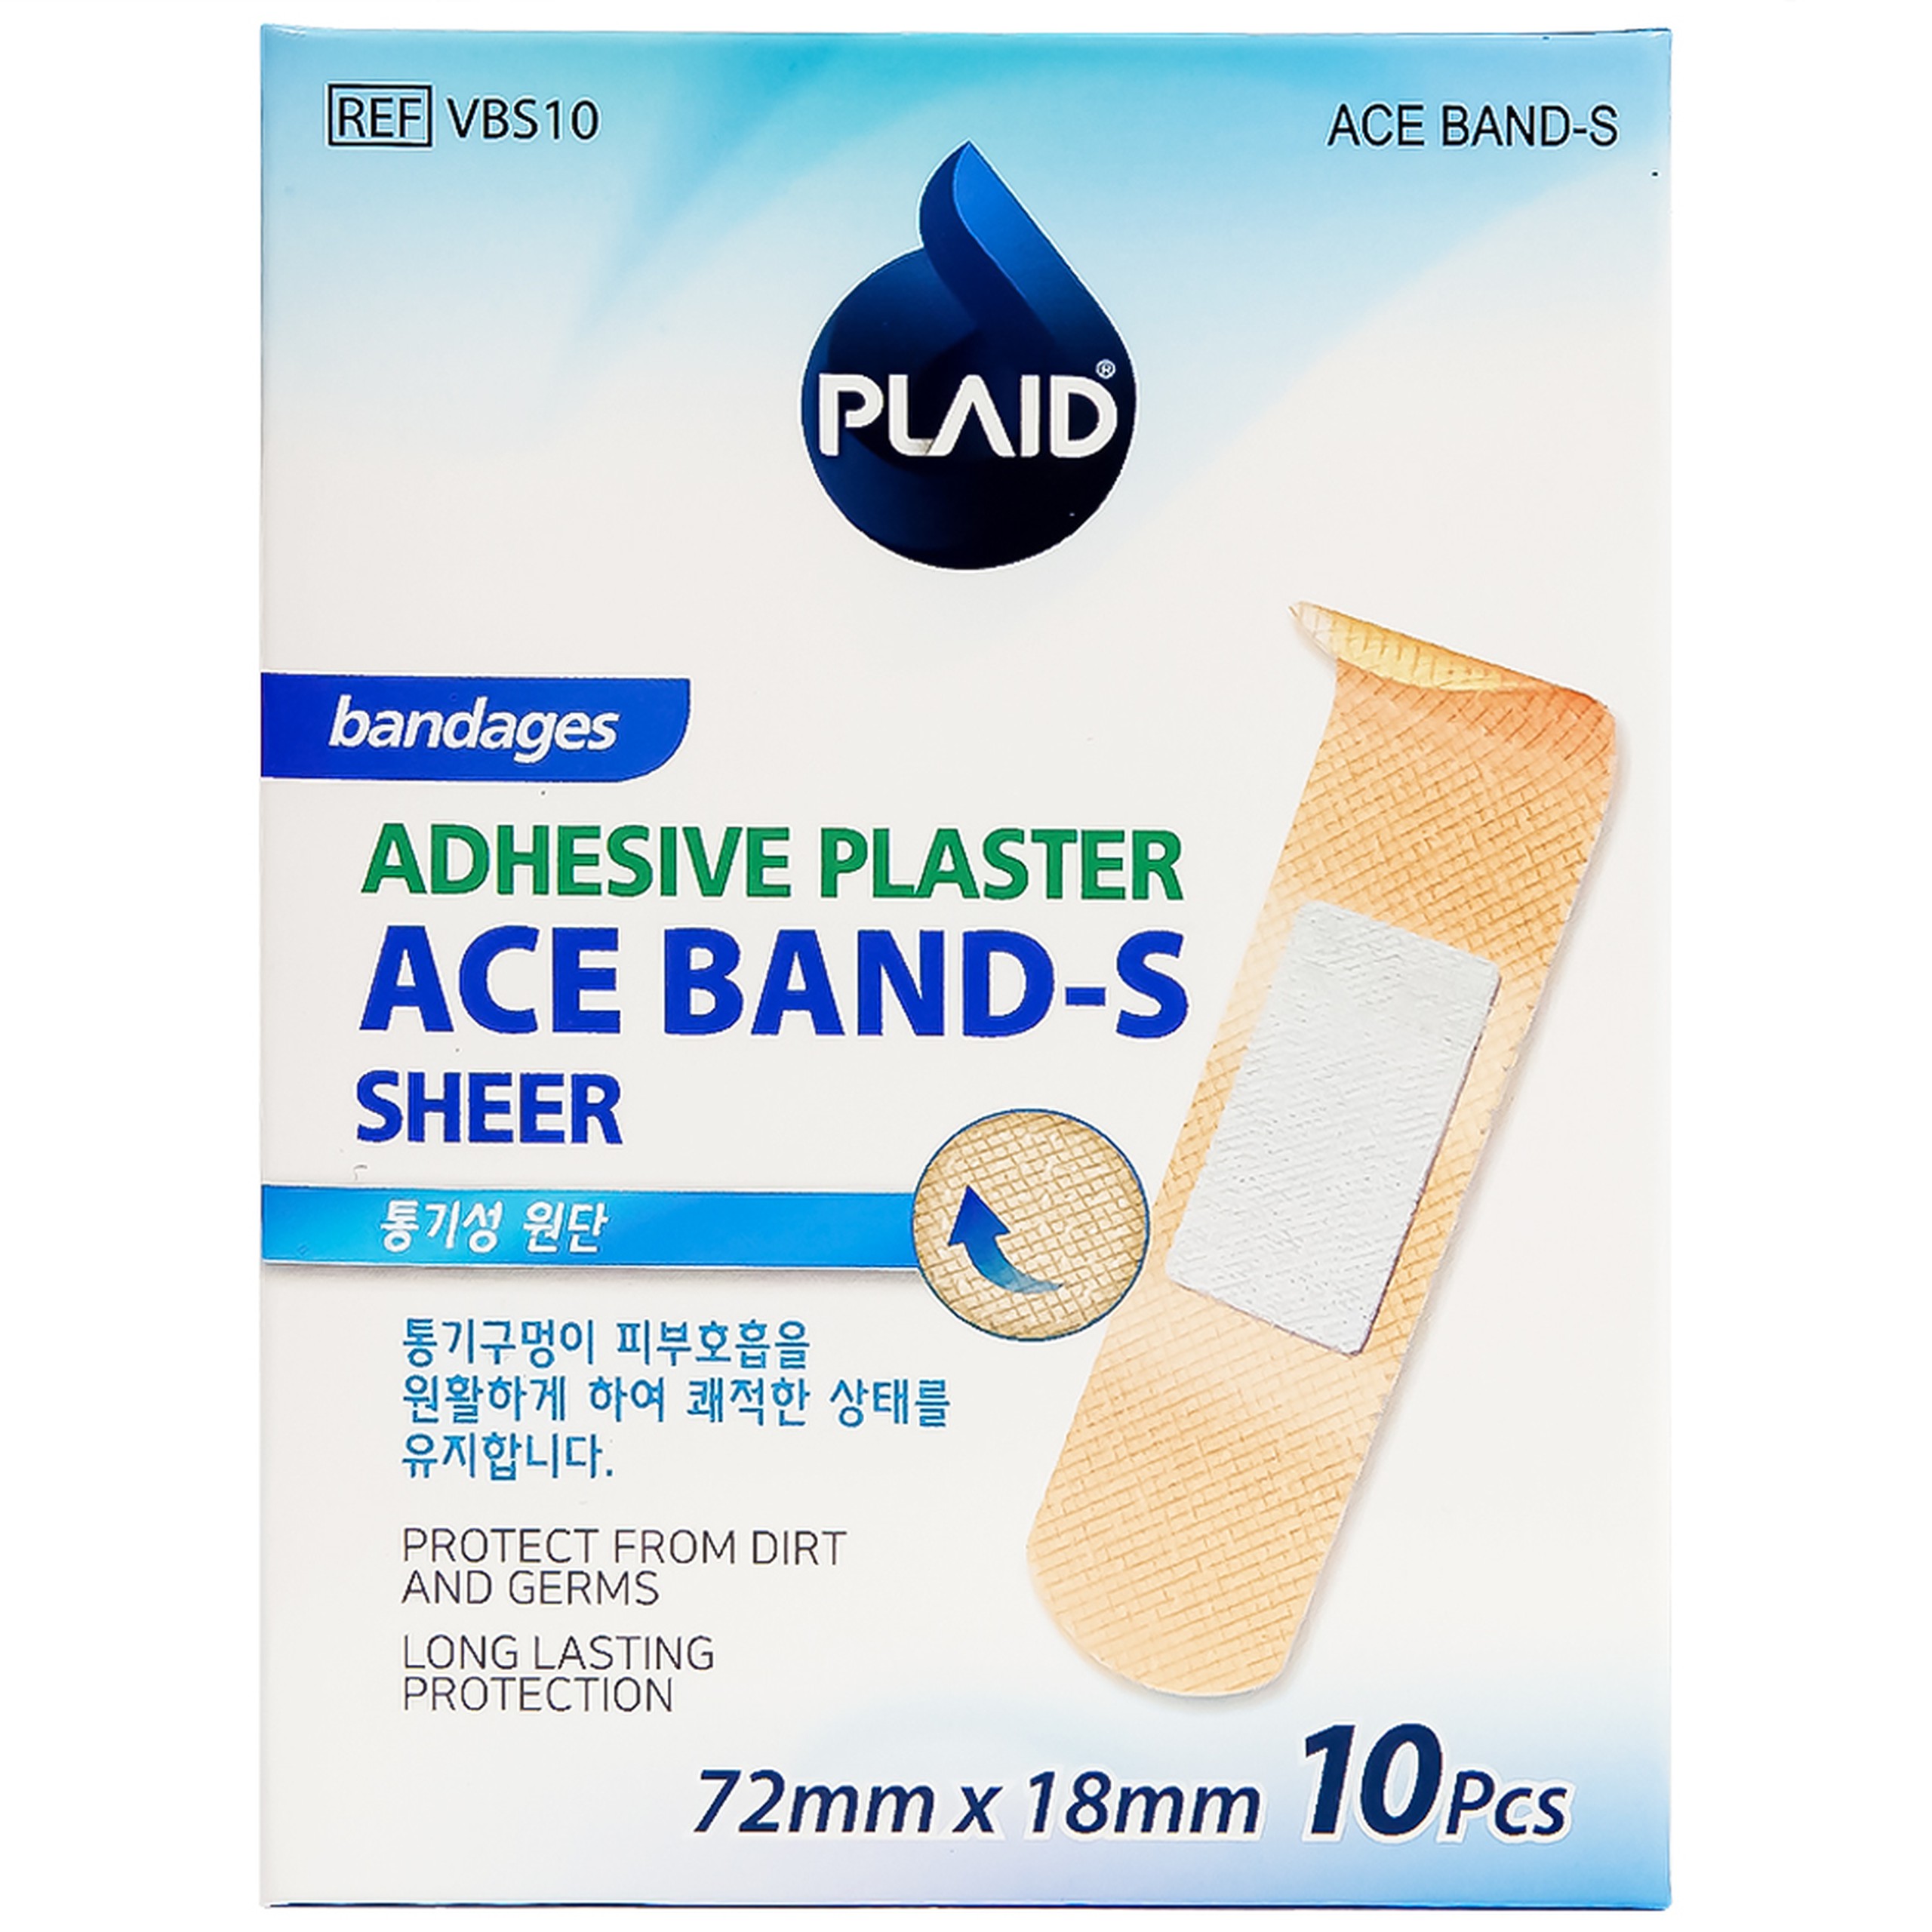 Băng keo cá nhân màu da Ace Band-S (Sheer) bảo vệ vết thương hở (72mm x 18mm - 10 miếng)